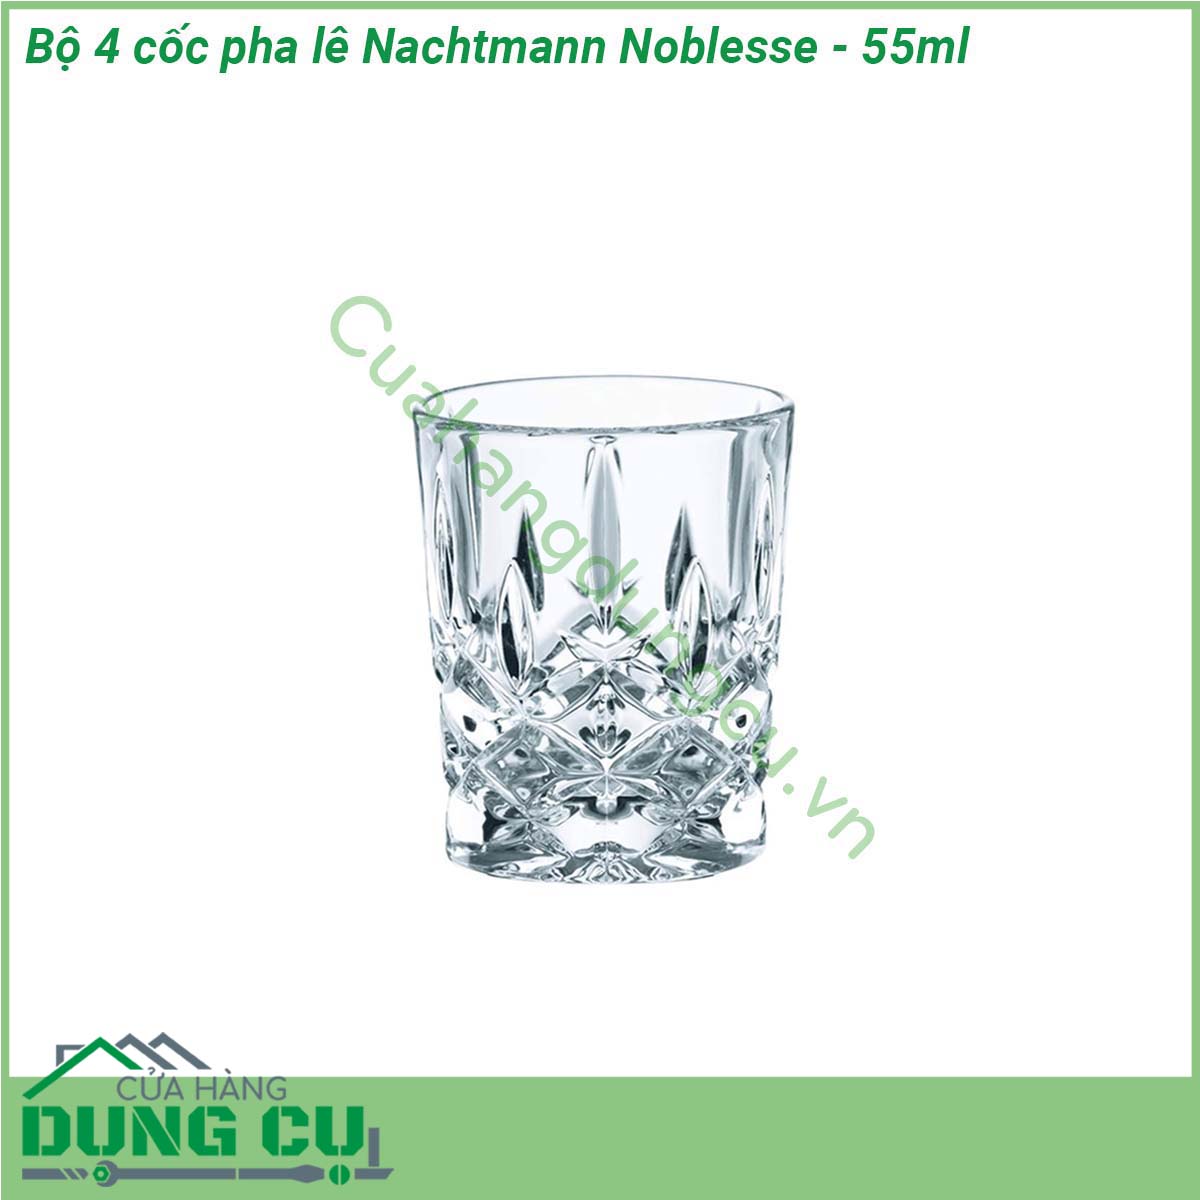 Bộ 4 cốc pha lê Nachtmann Noblesse - 55ml được làm từ chất liệu pha lê không chì sản xuất theo tiêu chuẩn của Đức cẩn thận từ khâu chọn nguyên liệu được nung ở nhiệt độ cao trên 1500oC vì vậy hoàn toàn có thể yên tâm về độ trong độ bền và độ an toàn không chứa chì an toàn cho sức khỏe người tiêu dùng